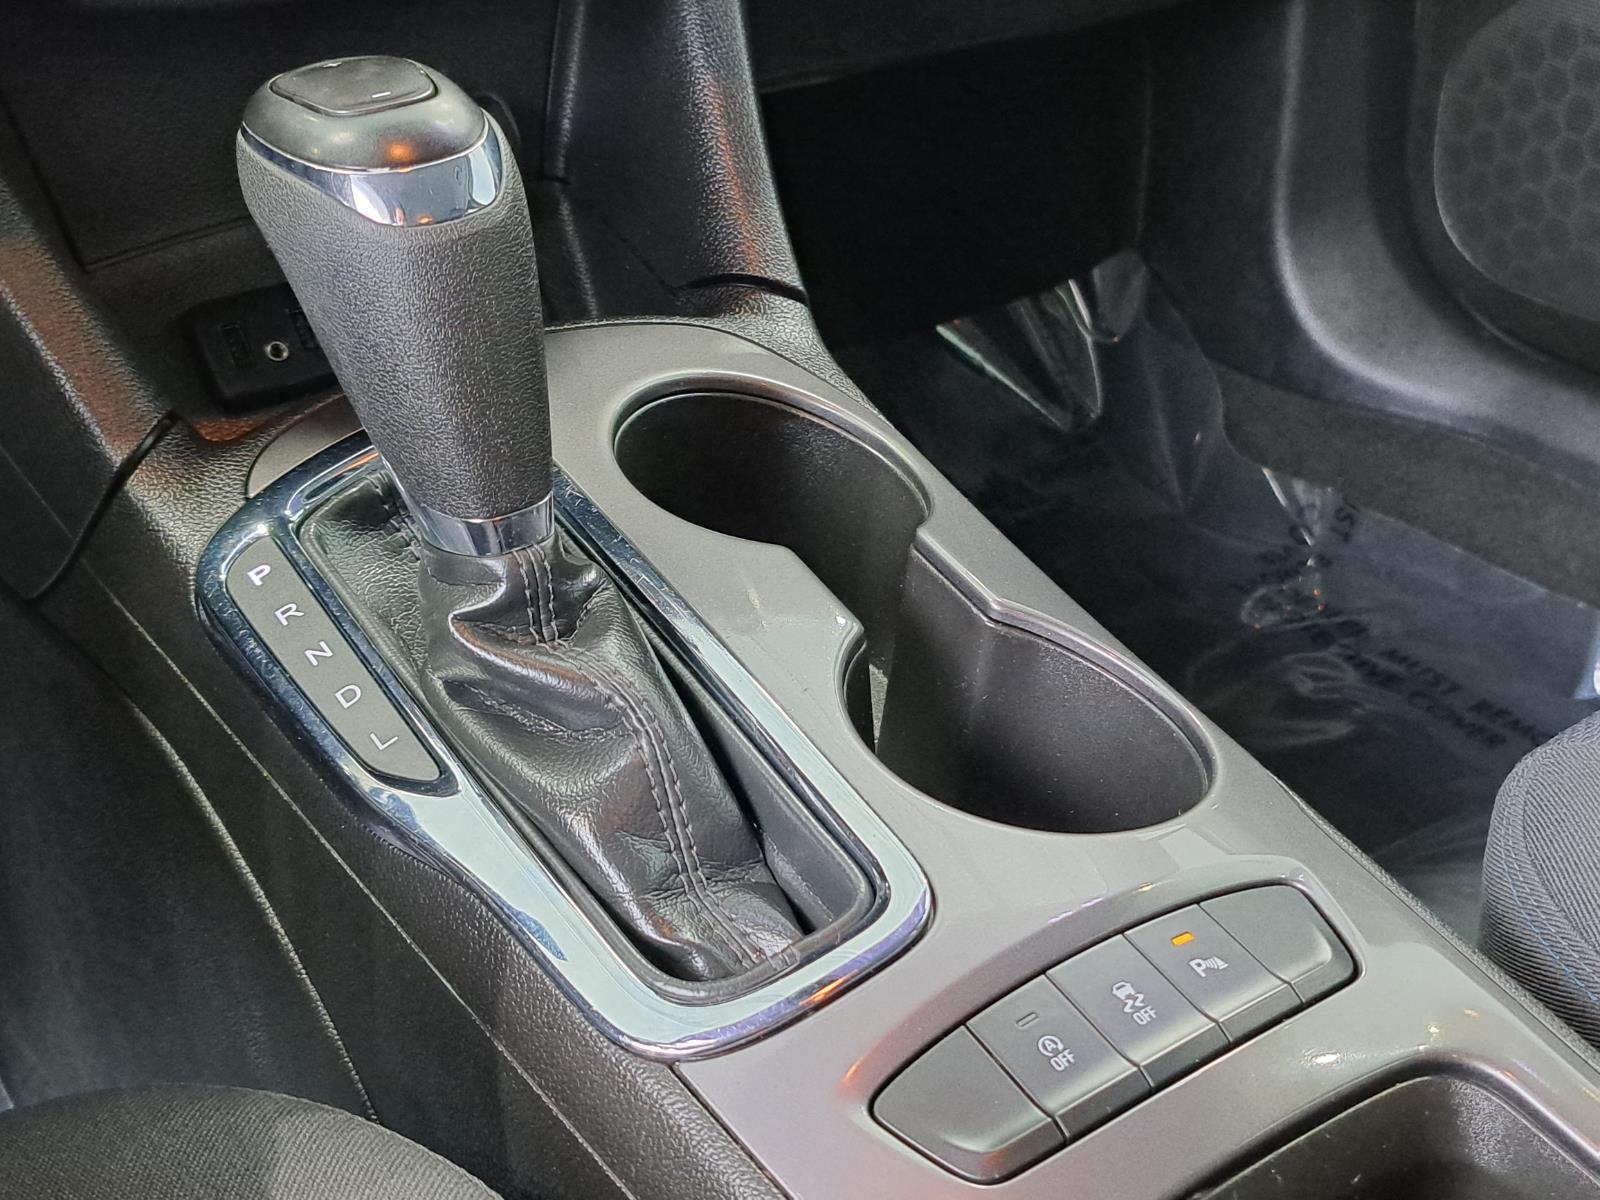 2019 Chevrolet Cruze LT Hatchback 4 Dr. Front Wheel Drive 21